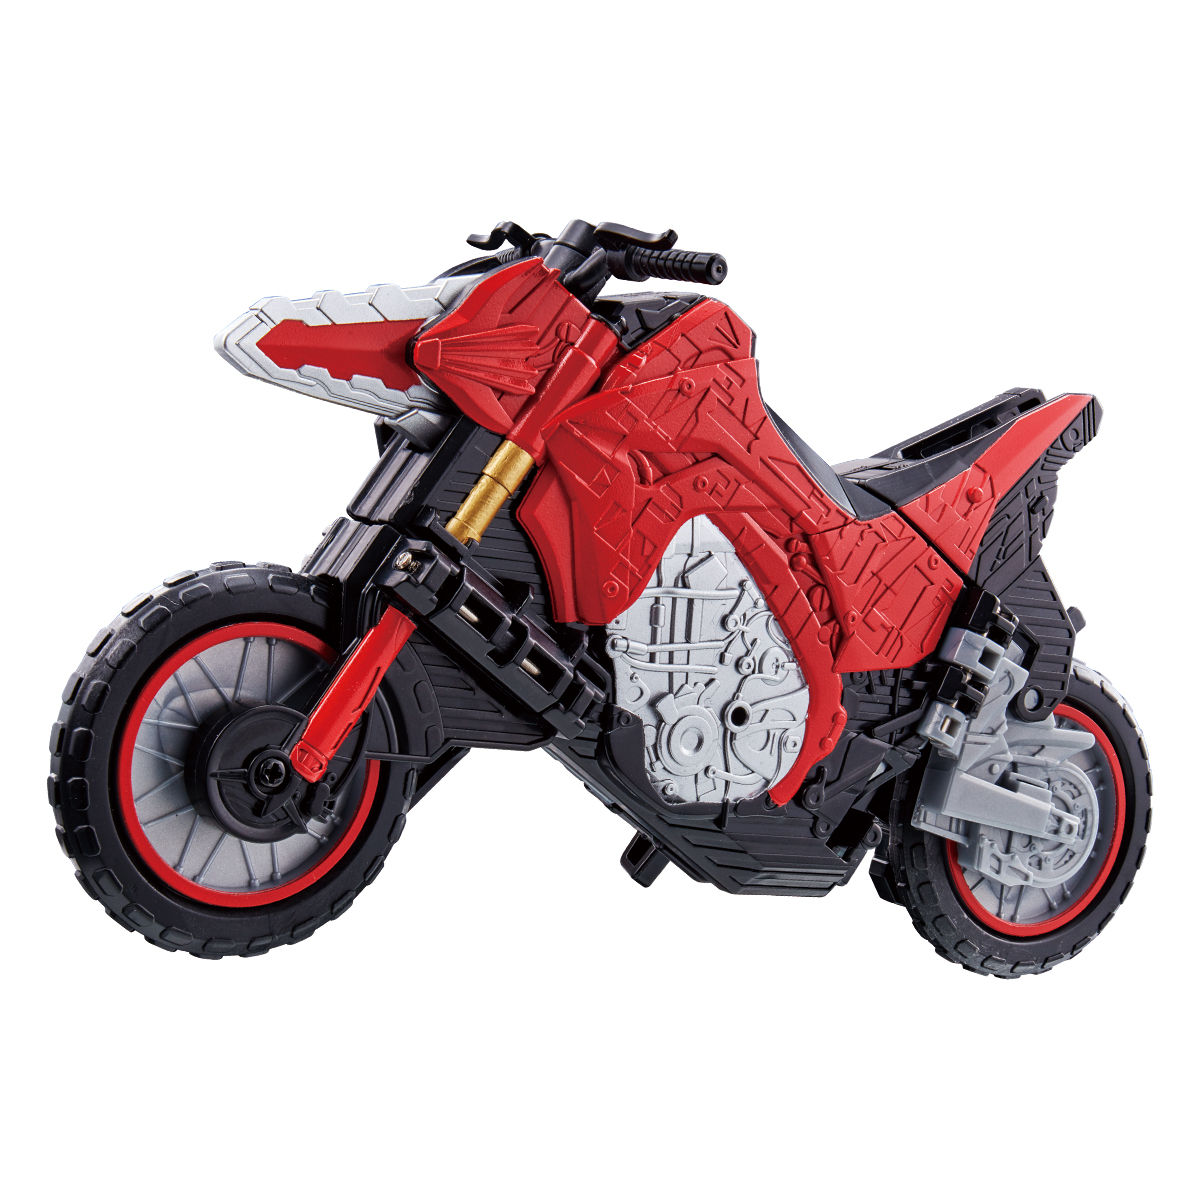 バイク変形 Dxディアゴスピーディーワンダーライドブック 仮面ライダーおもちゃウェブ バンダイ公式サイト